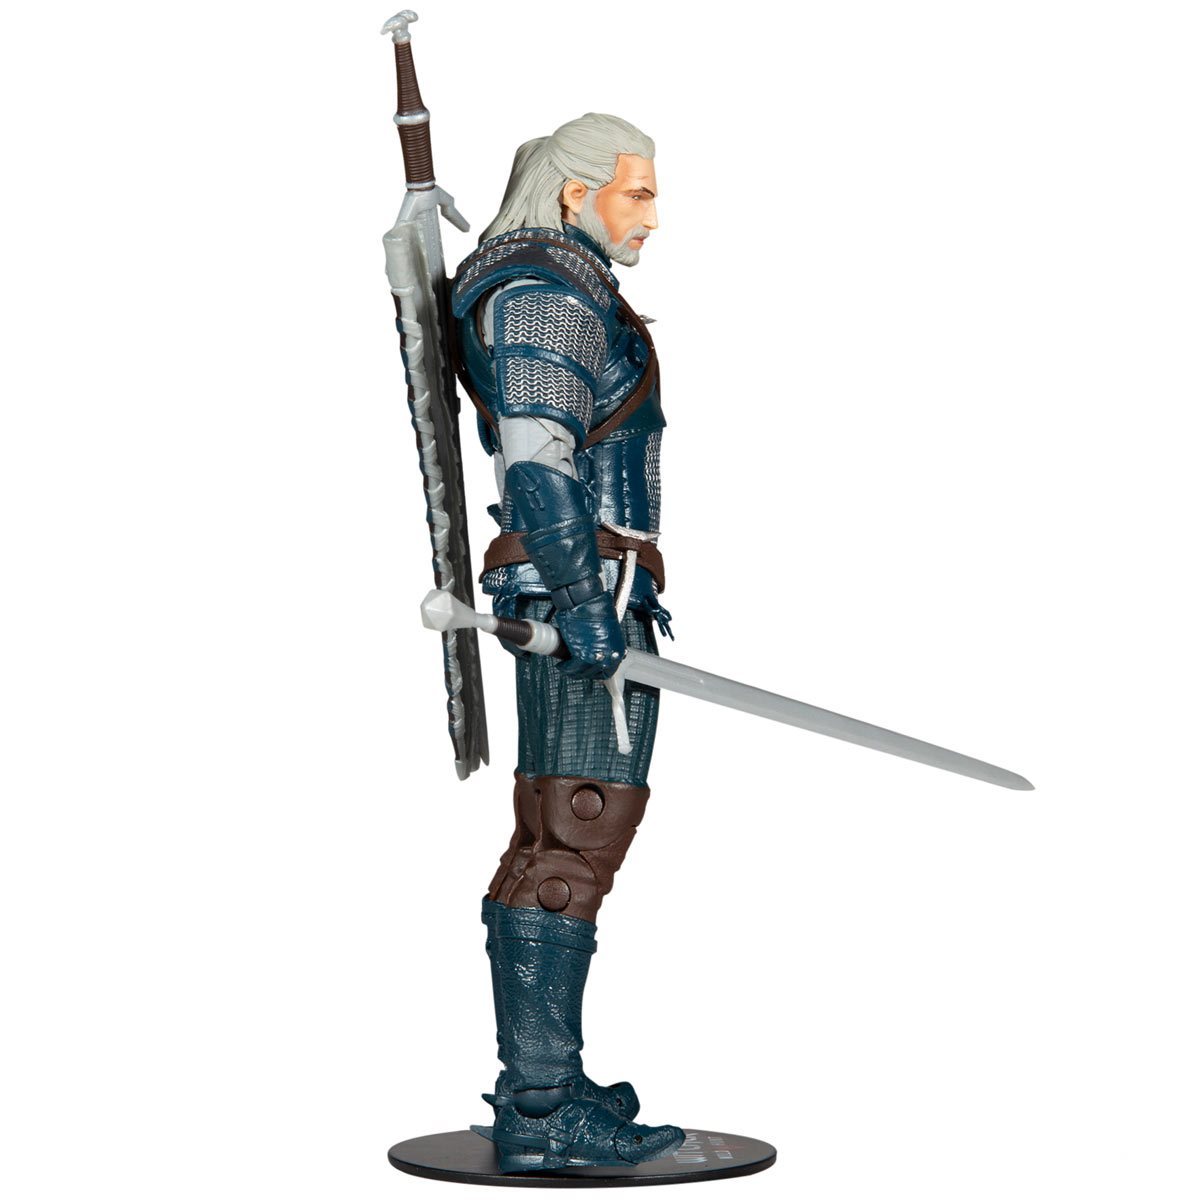 McFarlane Figura de Accion: The Witcher Gamming - Geralt de Rivia Armadura Viper 7 Pulgadas - Akiba